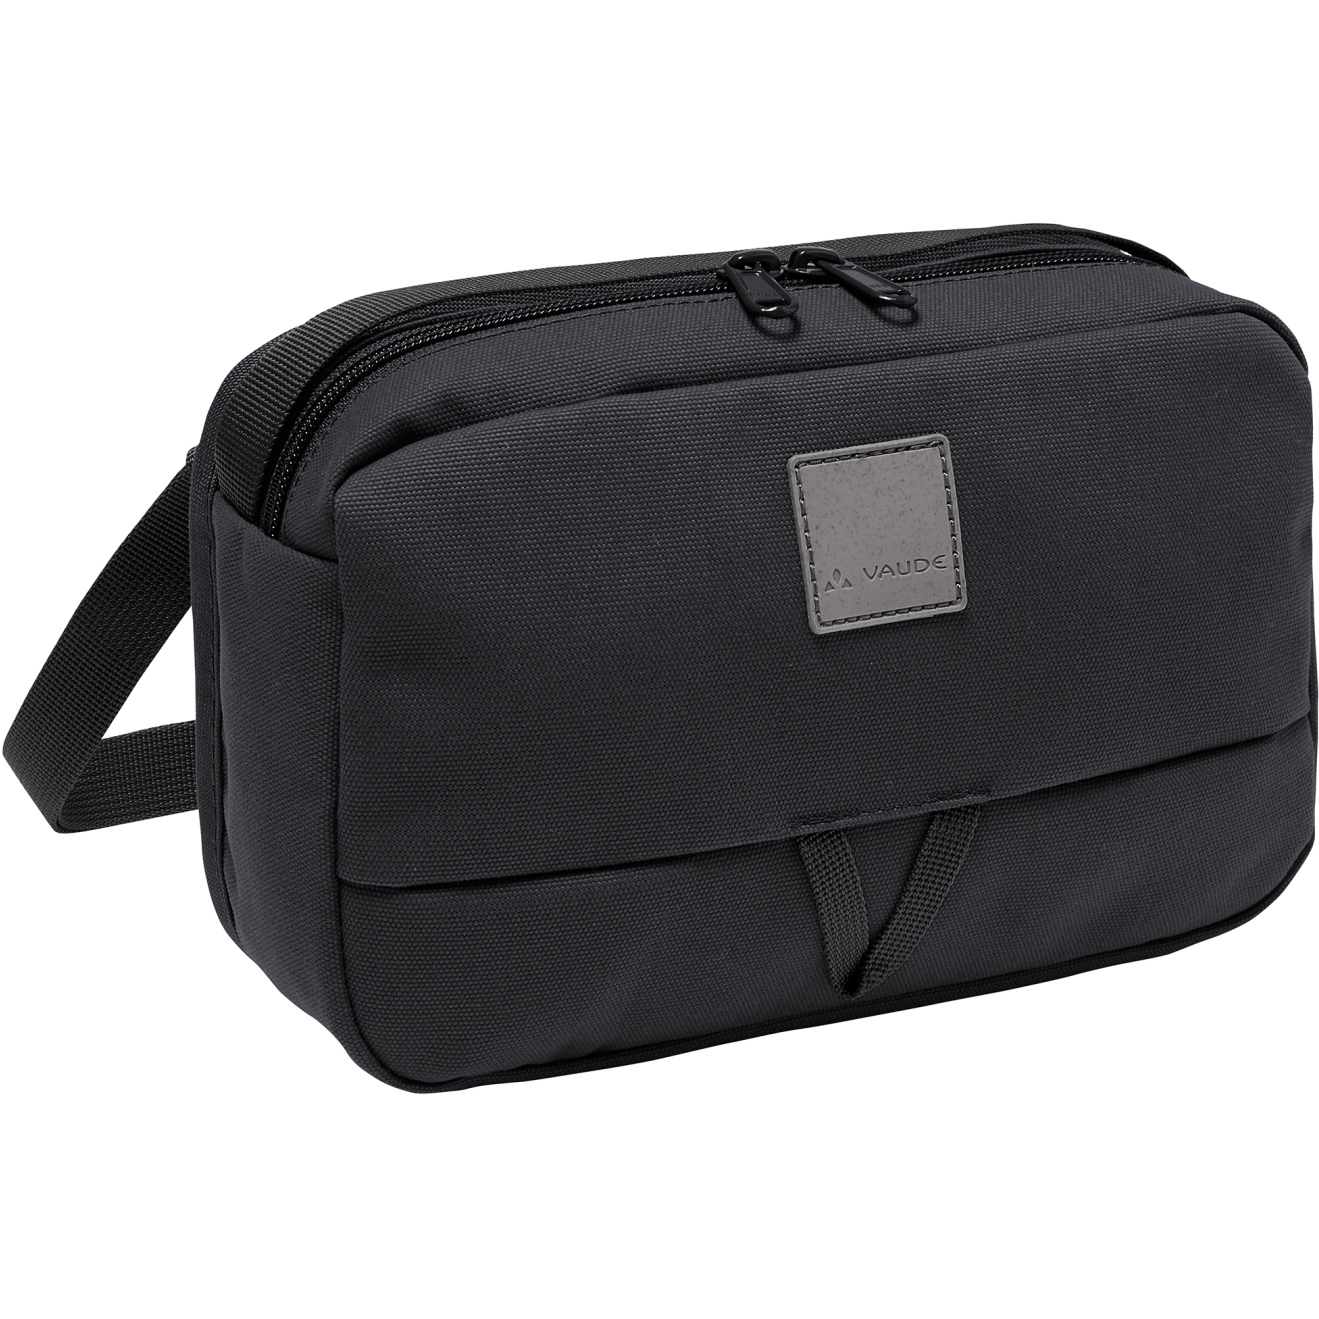 Vaude Coreway Minibag 3 Hip Bag - black | BIKE24